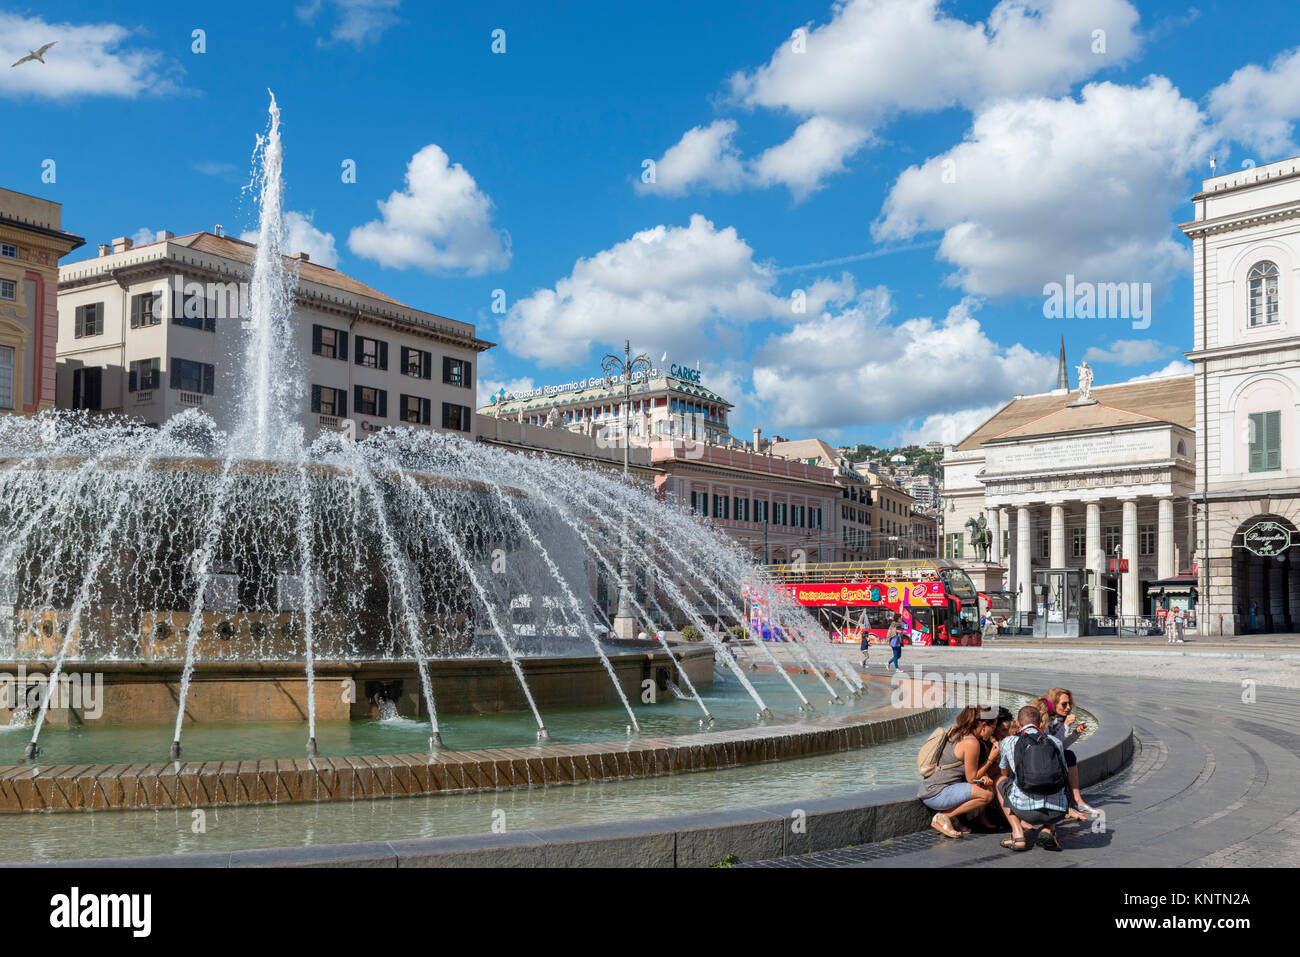 Fontaine de la place de Ferrari dans la vieille ville, Gênes, ligurie, italie Banque D'Images